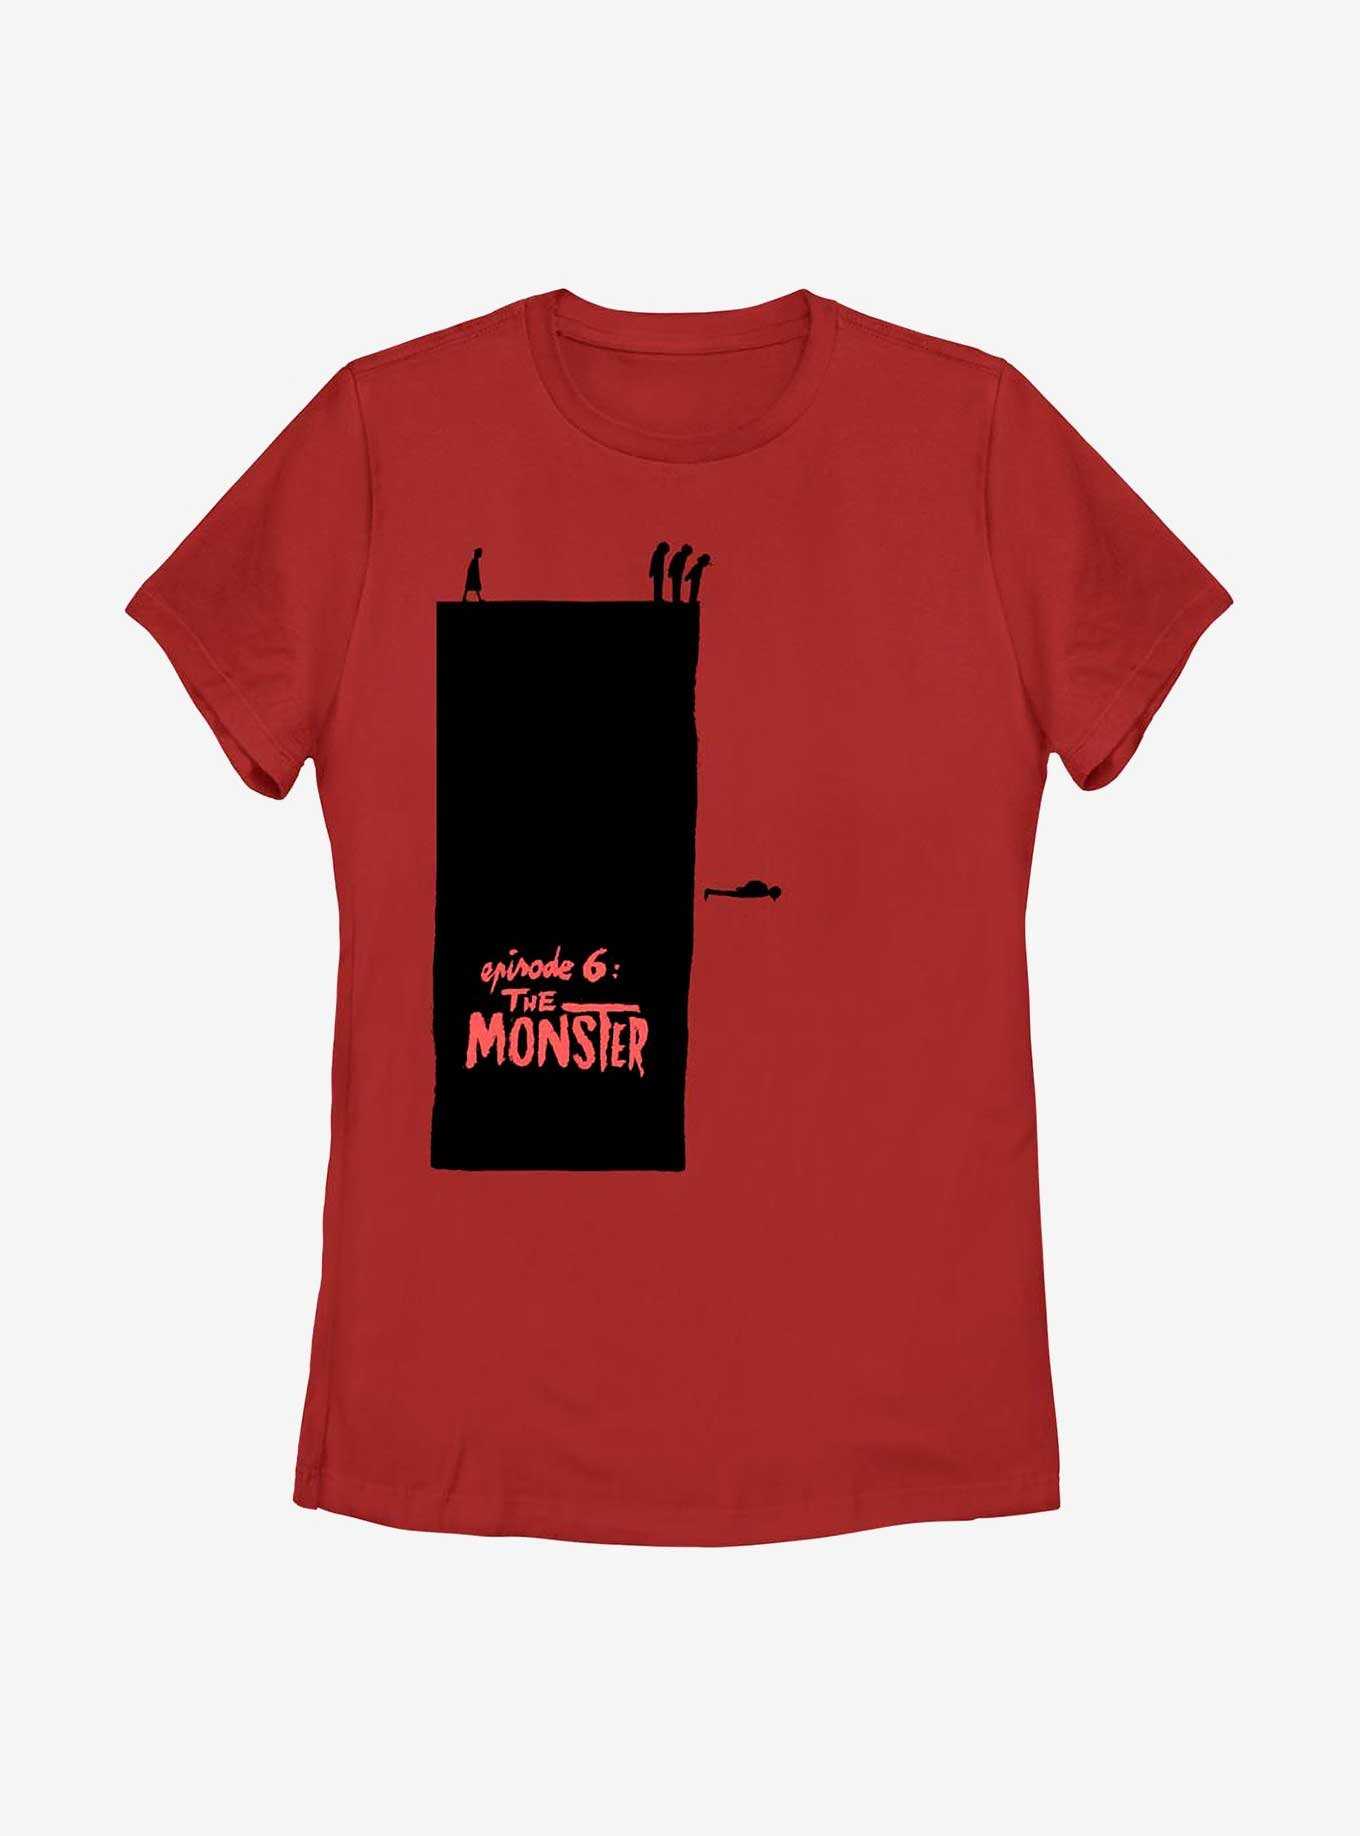 Stranger Things Episode 6 The Monster Womens T-Shirt, , hi-res